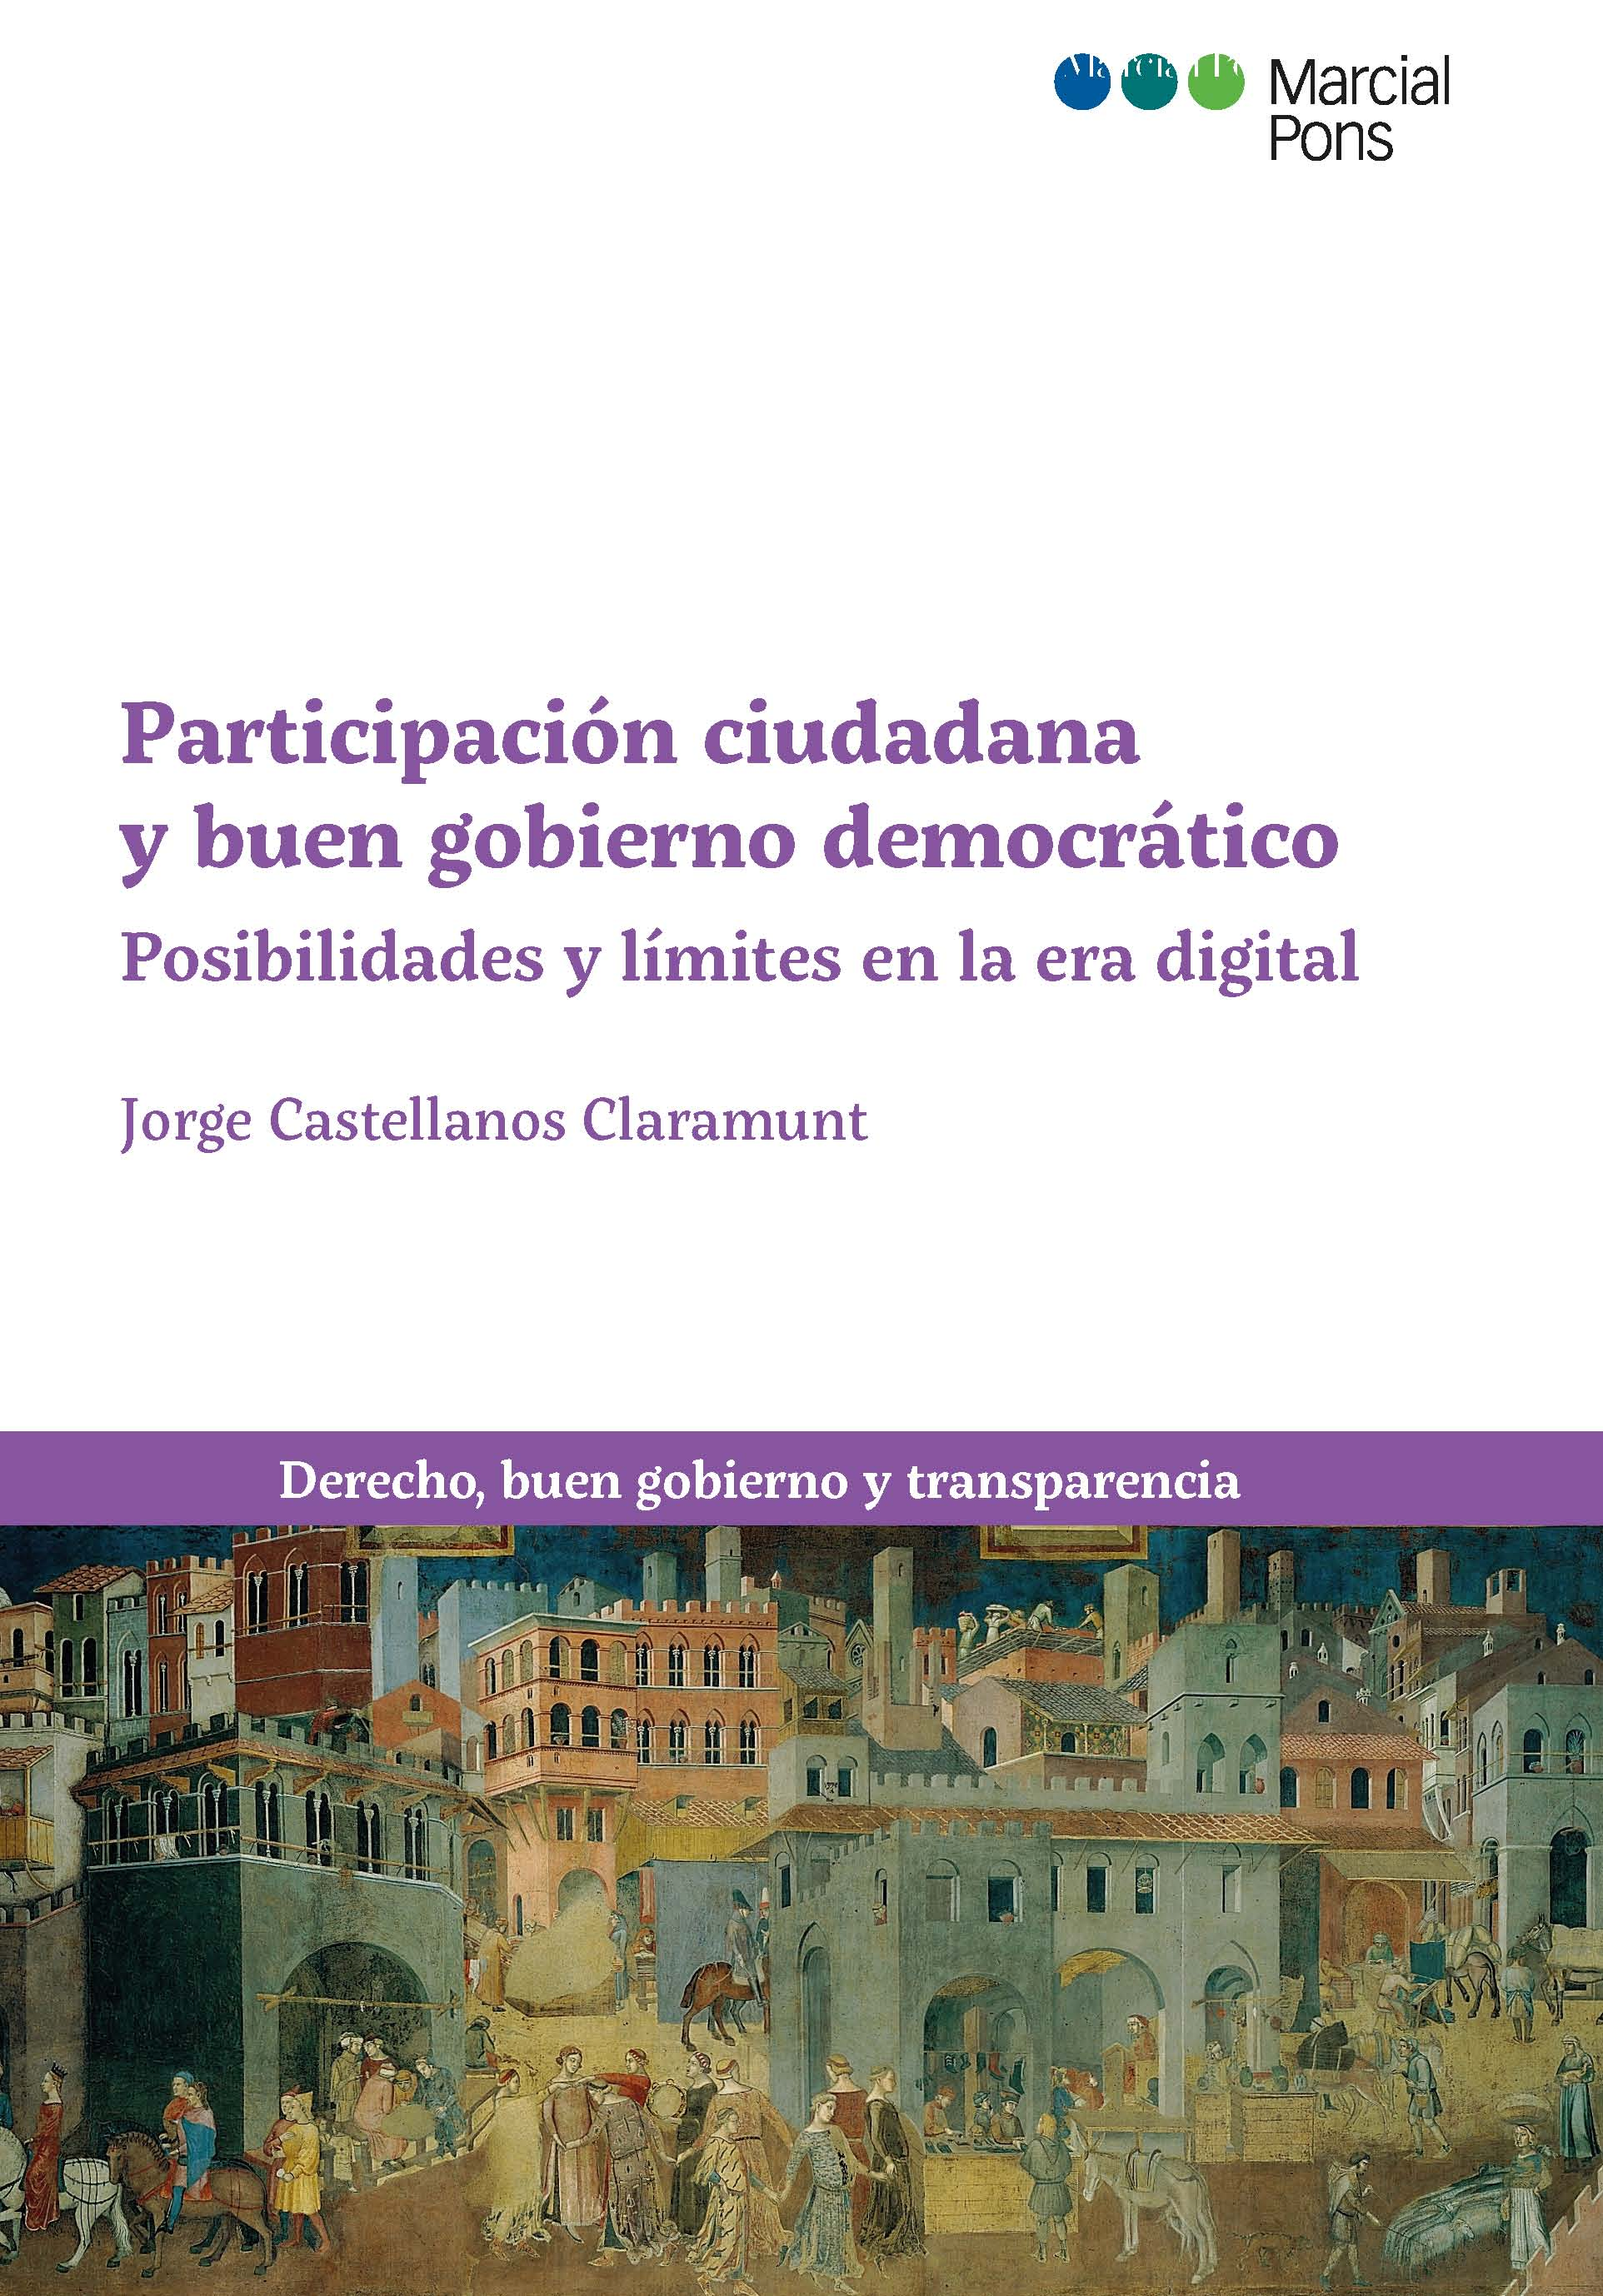 Presentación del libro "Participación ciudadana y buen gobierno democrático' de  Jorge Castellanos Claramunt